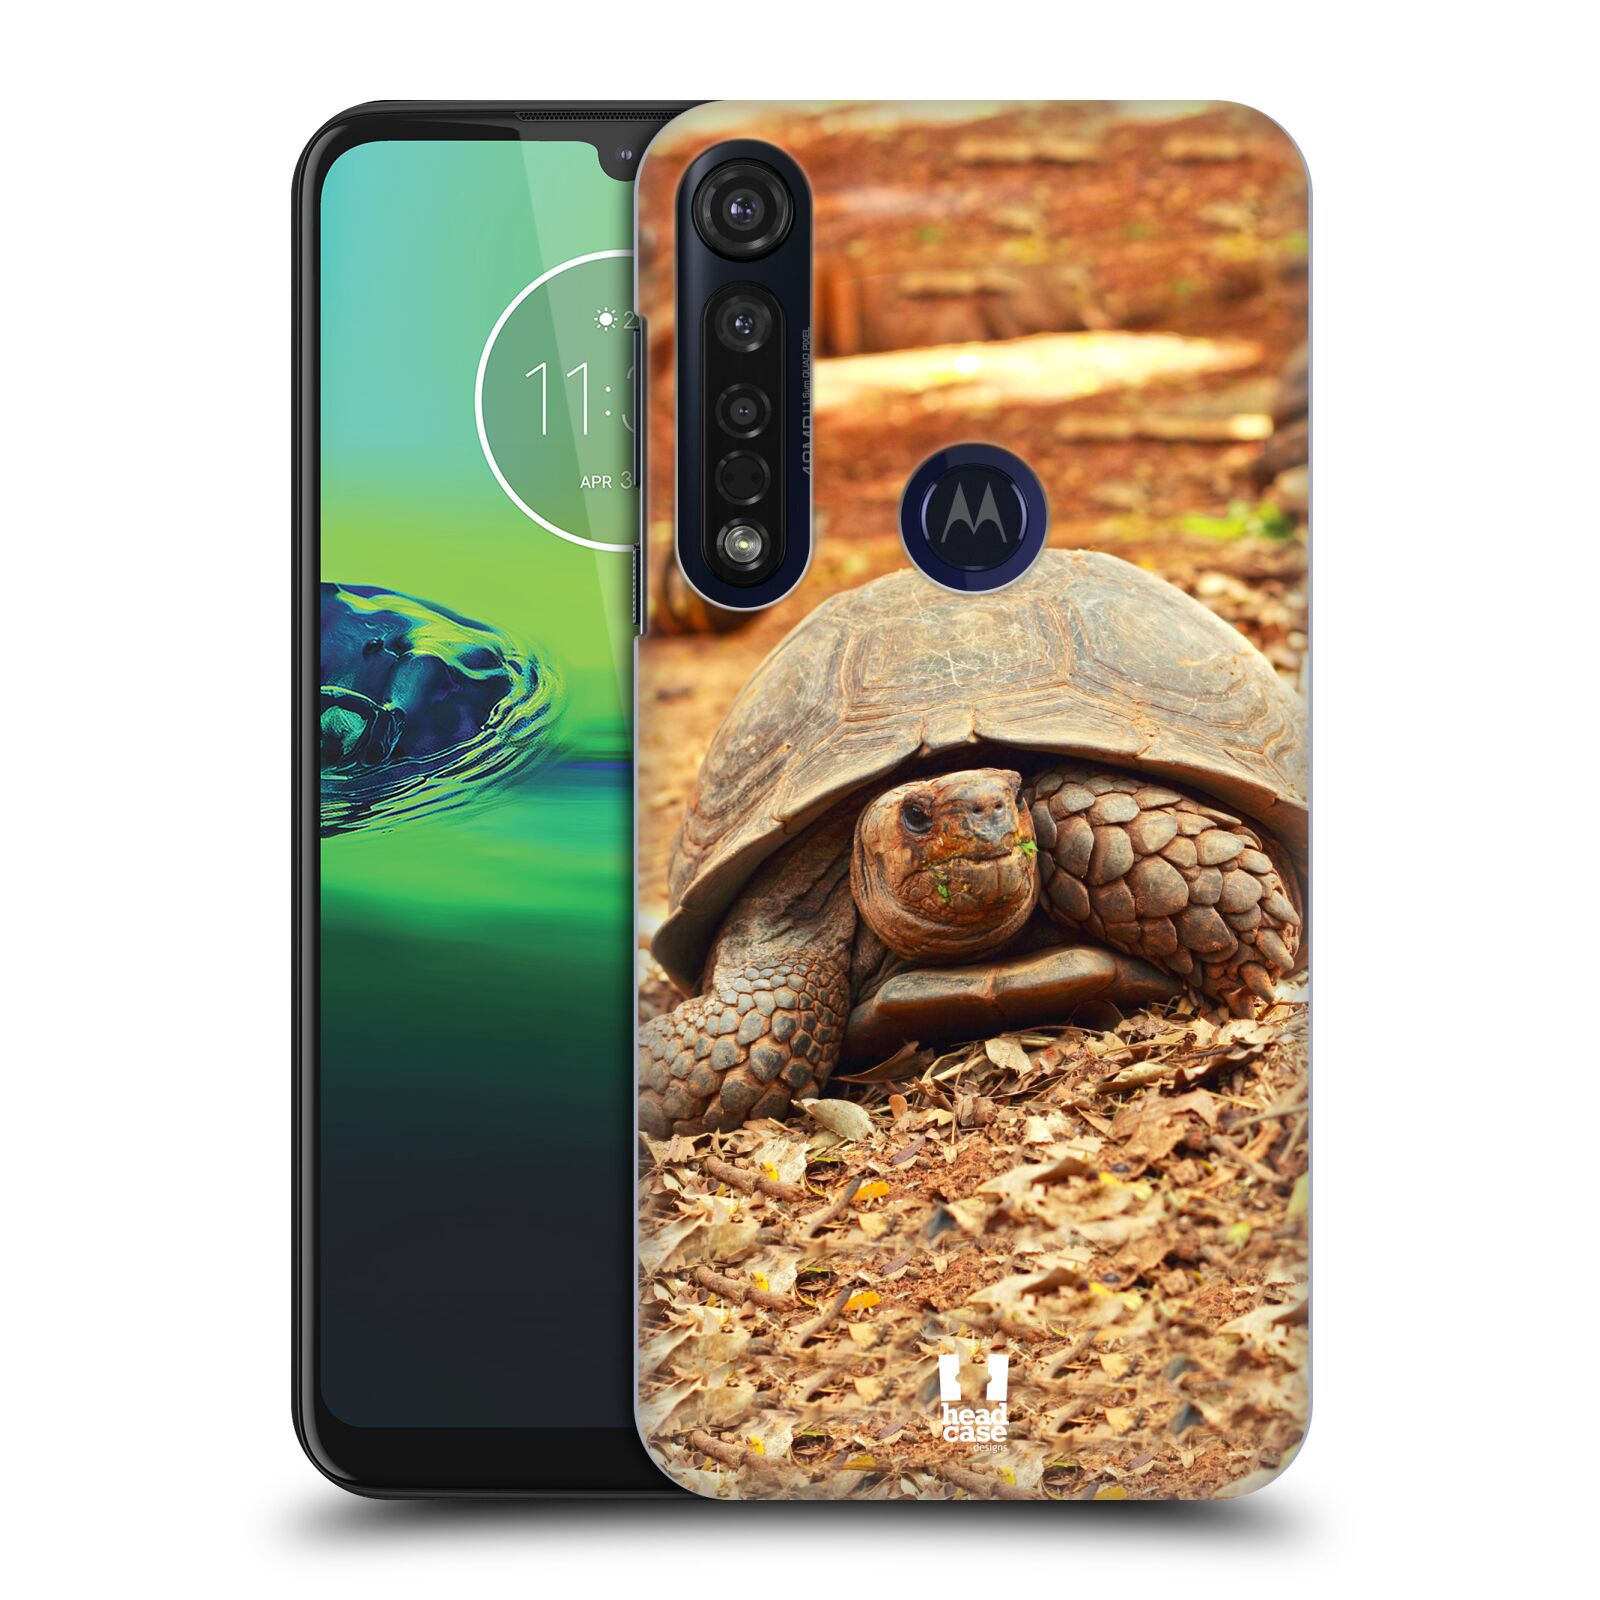 Pouzdro na mobil Motorola Moto G8 PLUS - HEAD CASE - vzor slavná zvířata foto želva